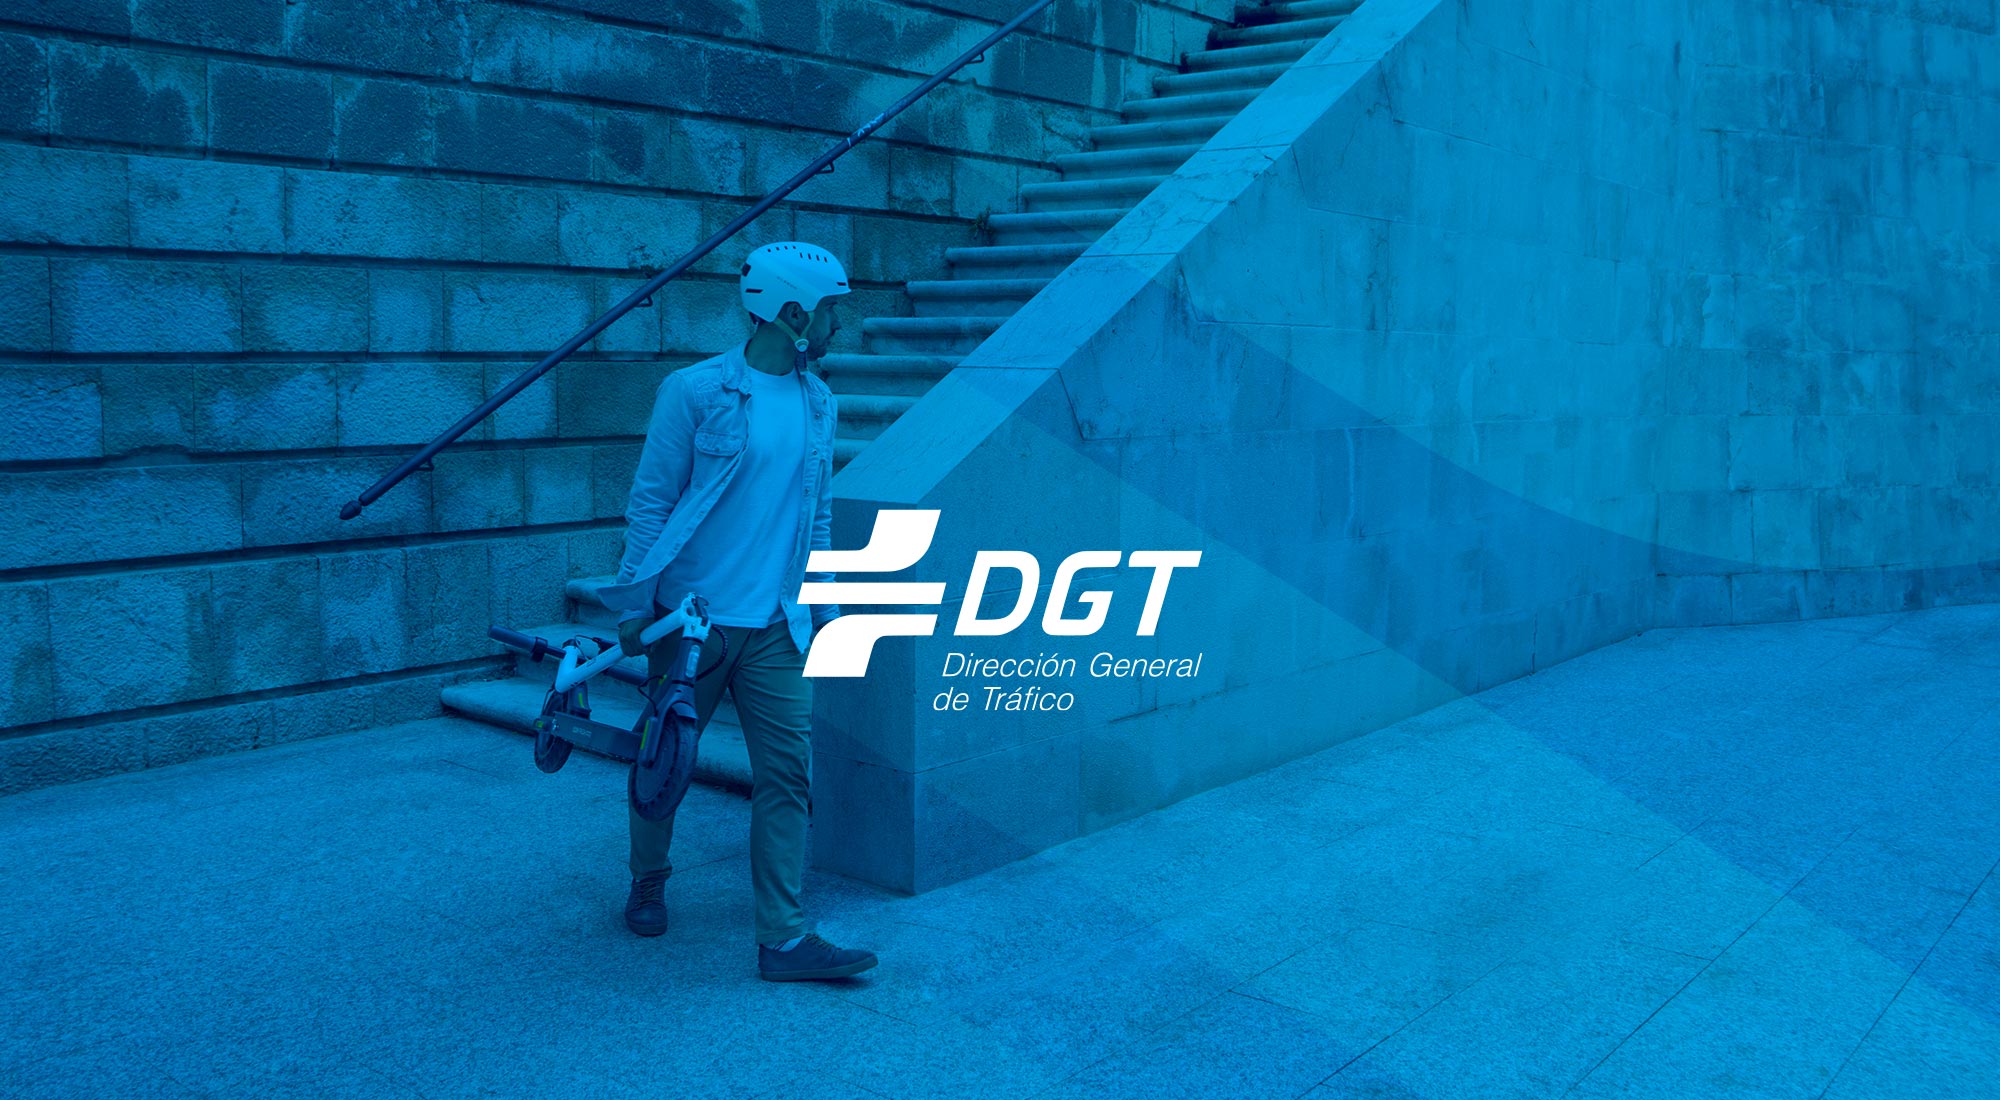 Patinetes eléctricos más seguros y eficientes: la nueva normativa de la DGT